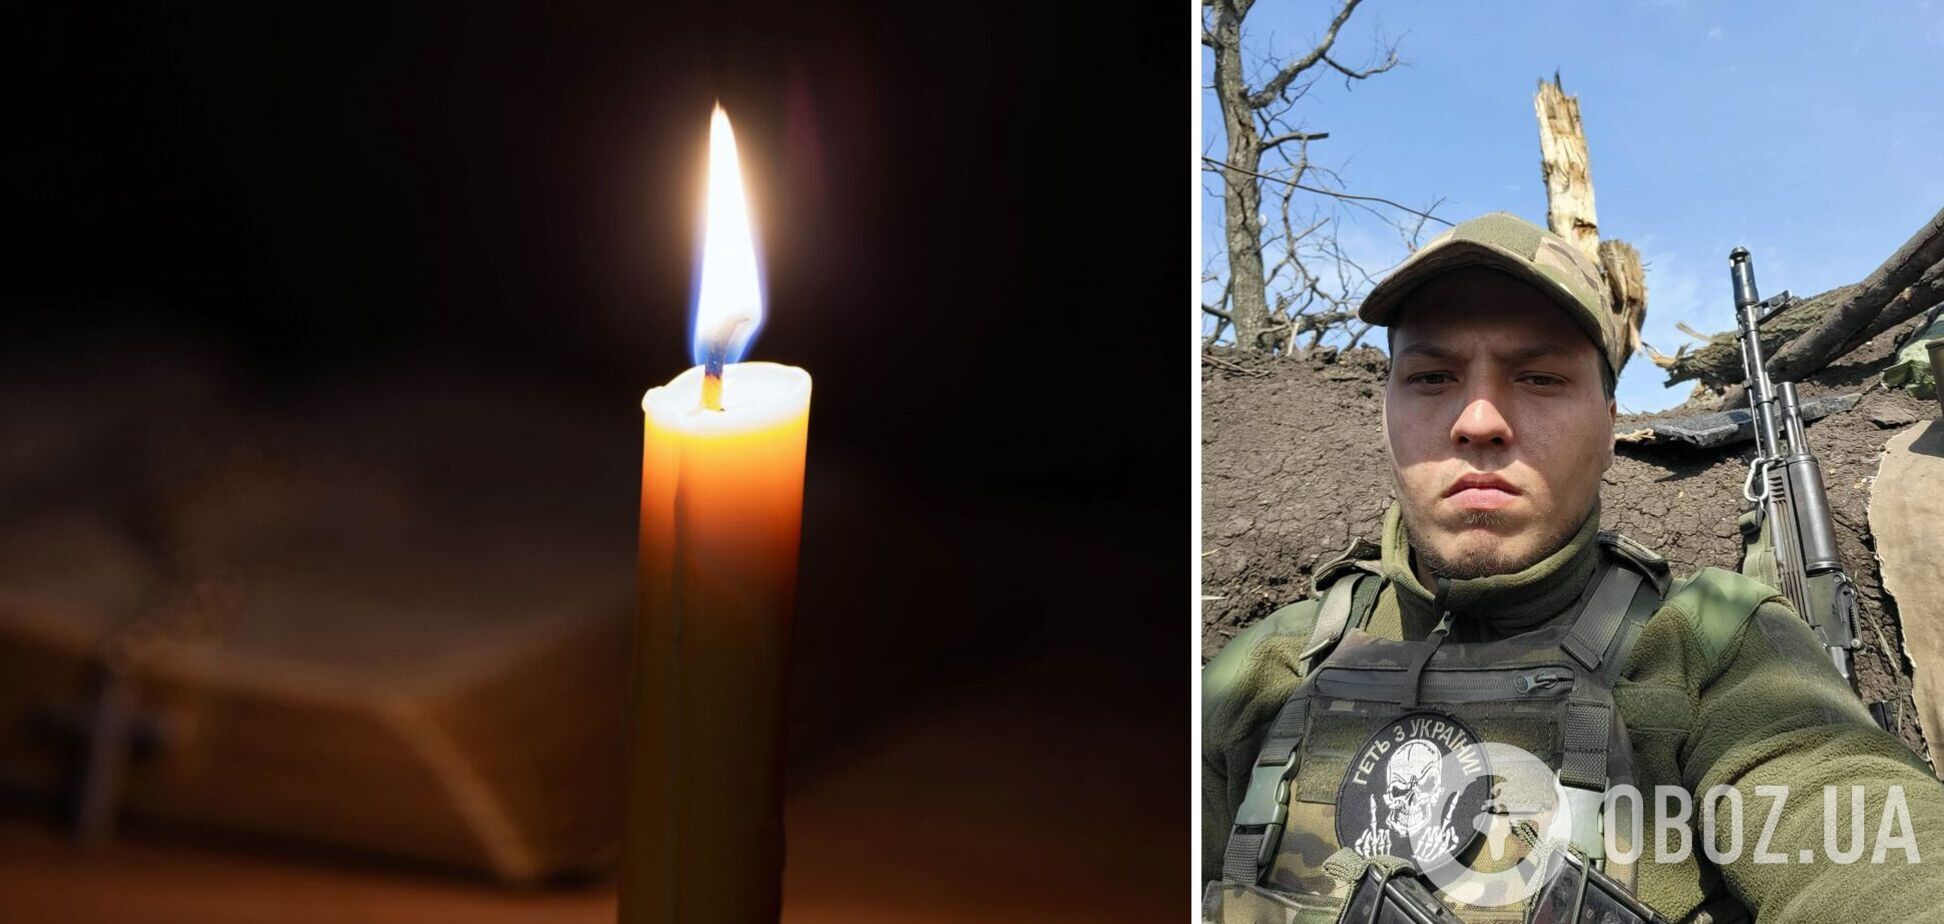 Життя захисника України обірвалось 8 лютого